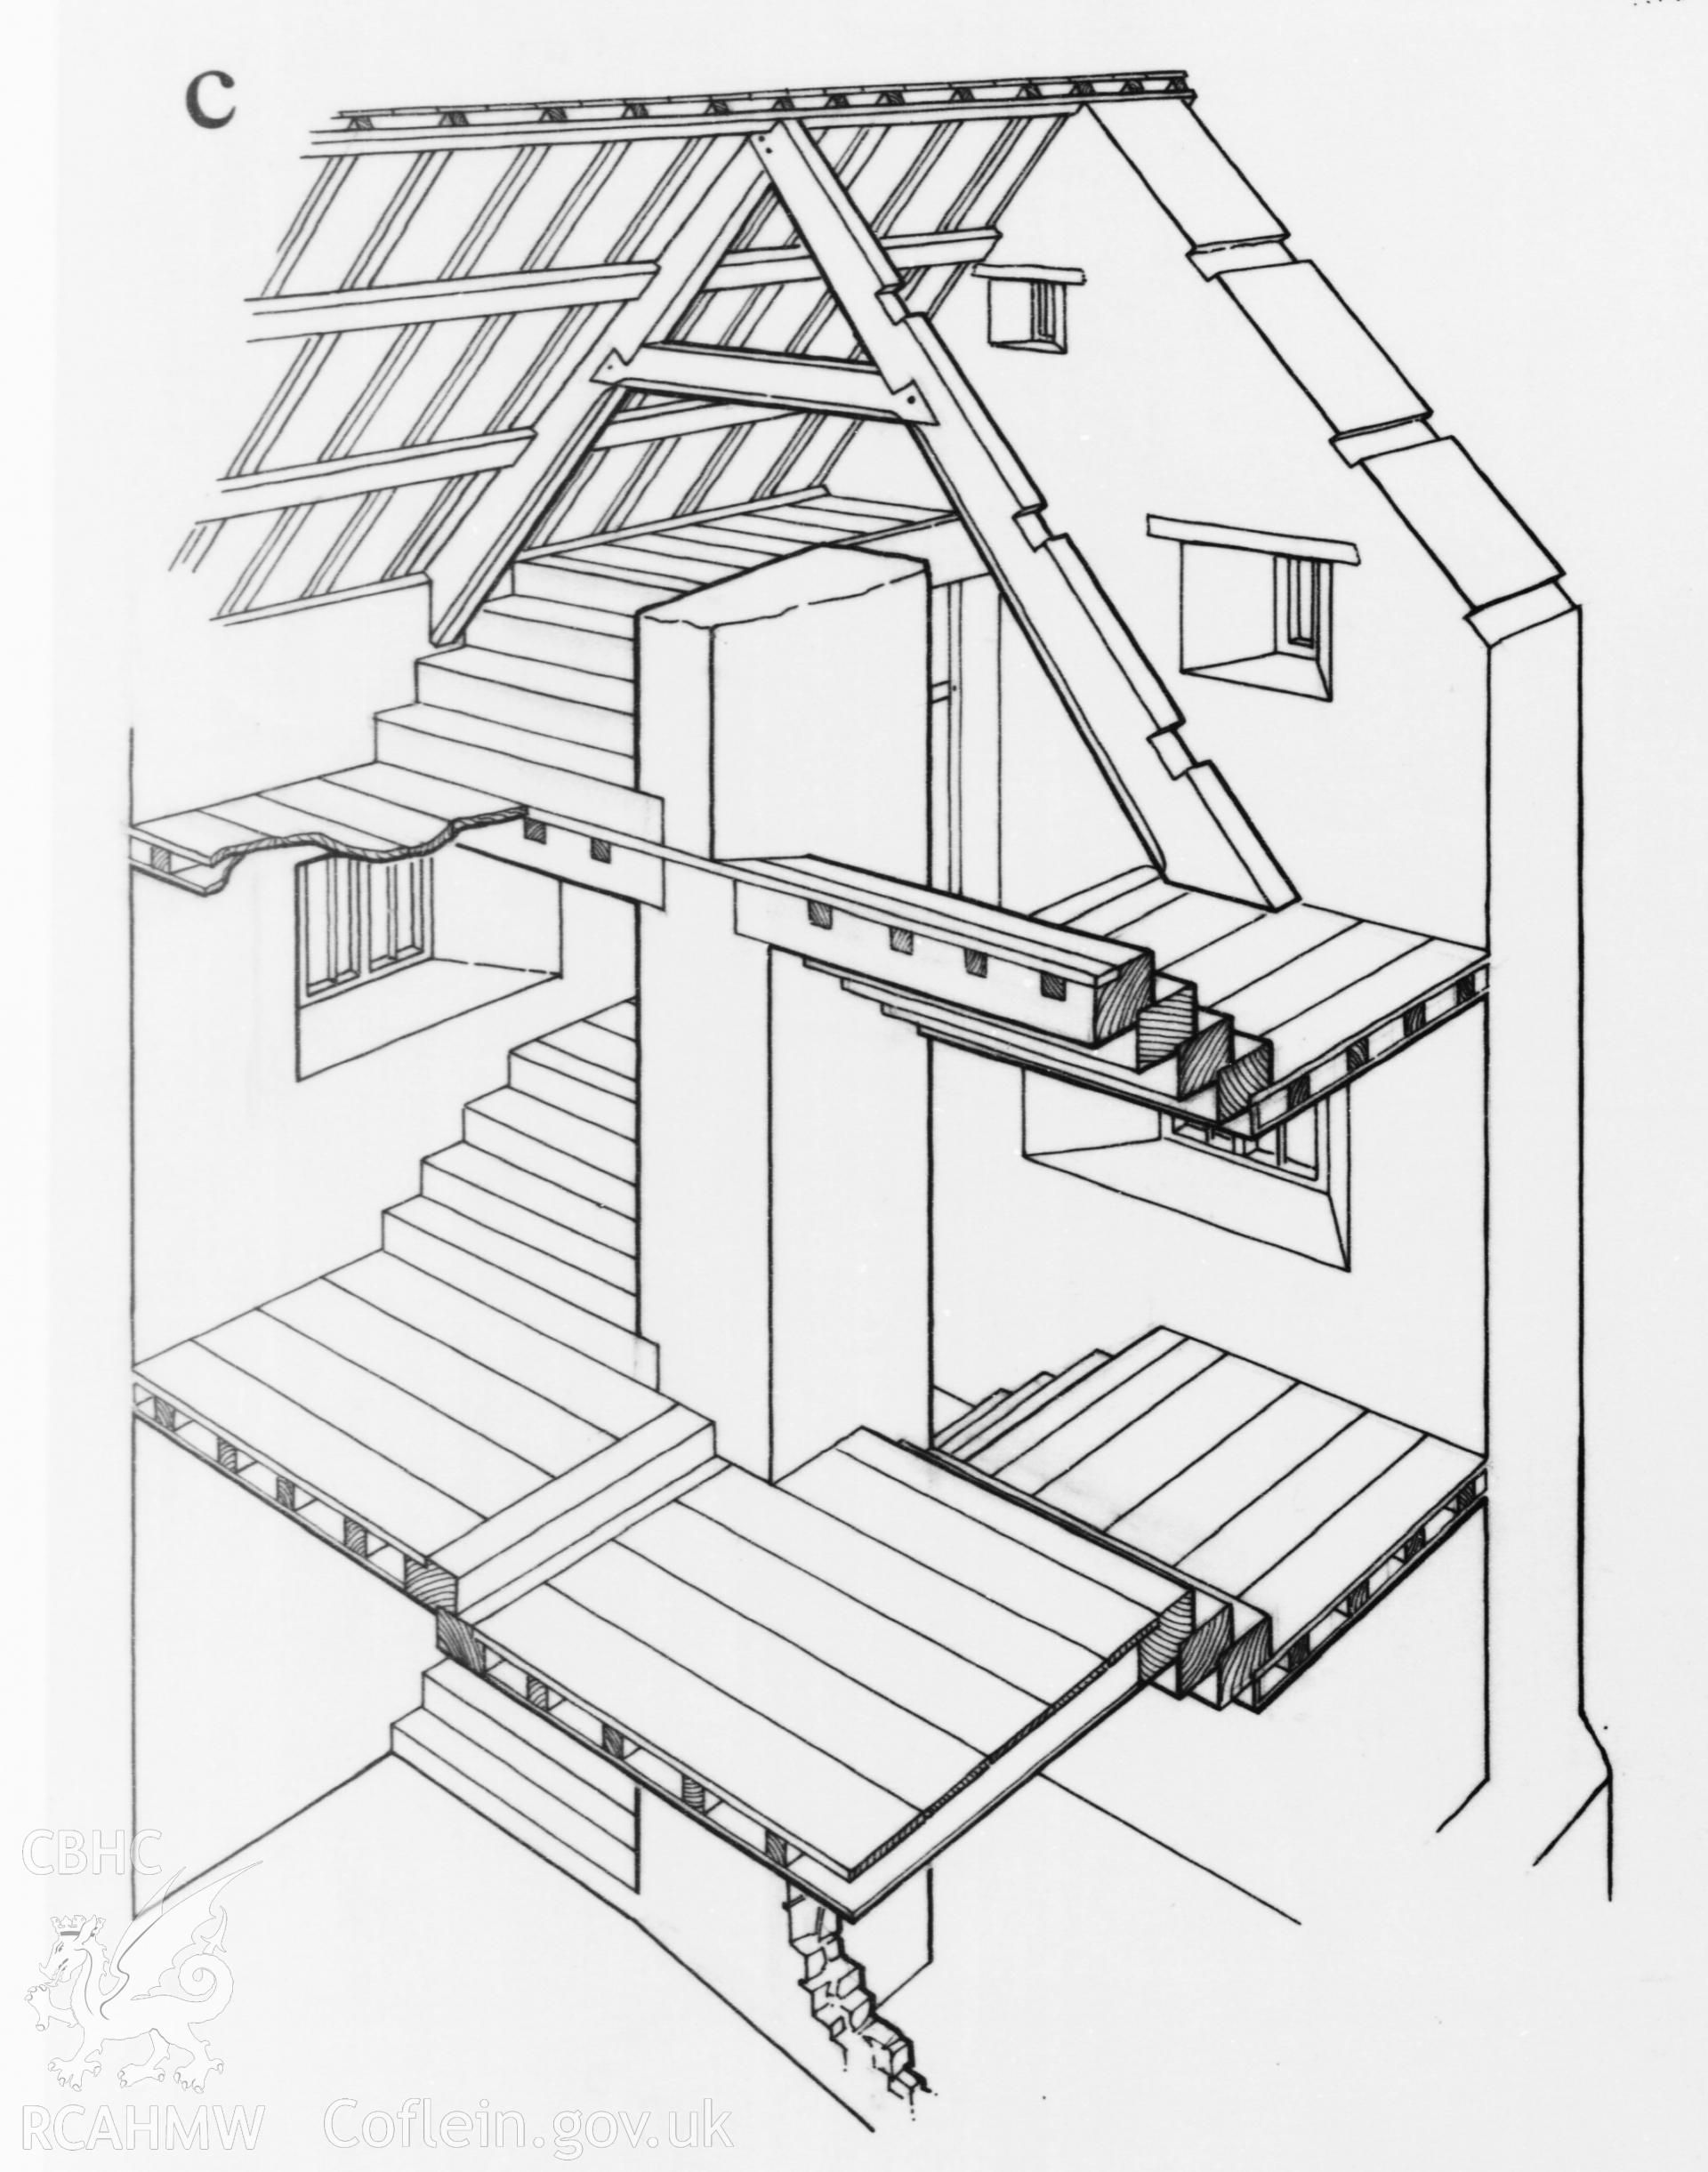 RCAHMW drawing showing section and cutaway sketch of Llanbradach Fawr, Llanfabon, published in Glamorgan IV, fig 42.